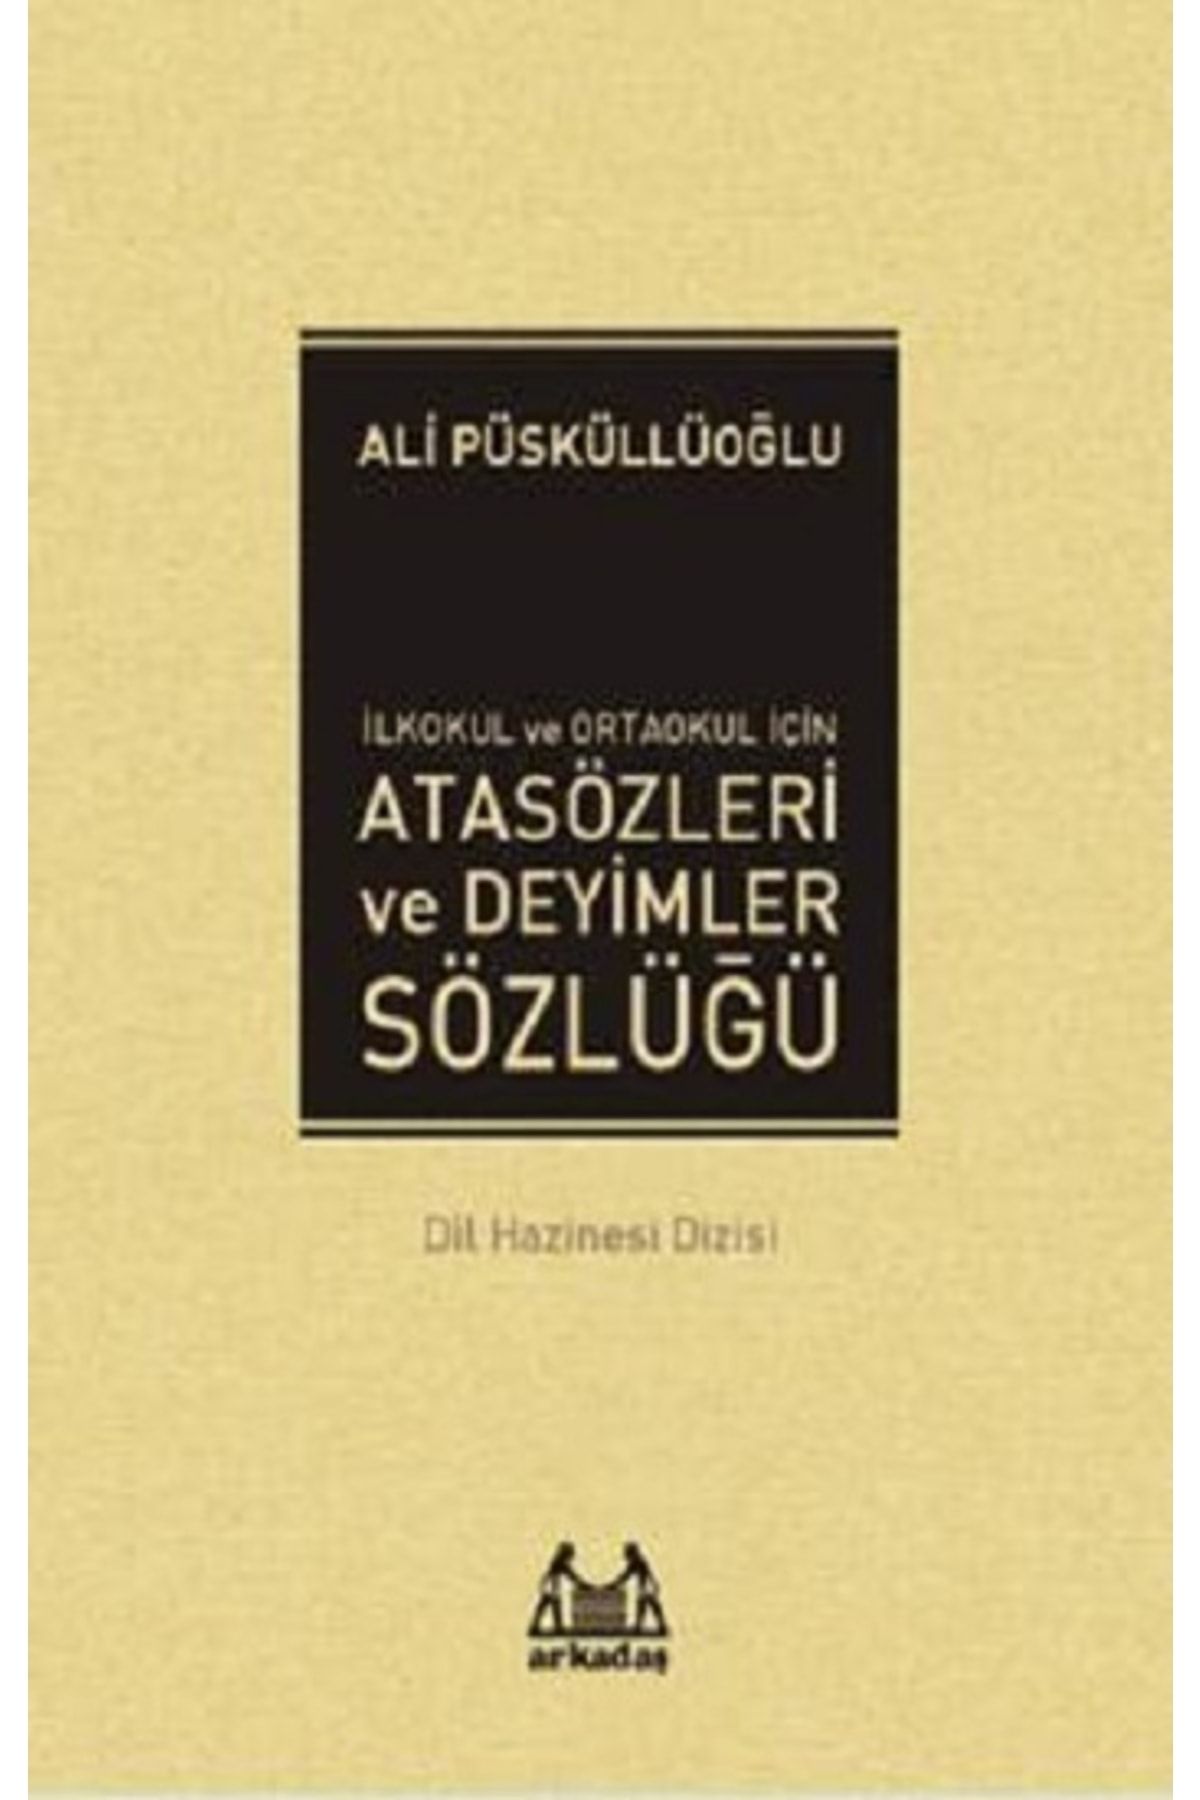 Arkadaş Yayıncılık Ilkokul Ve Ortaokul Için Atasözleri Ve Deyimler Sözlüğü - Ali Püsküllüoğlu